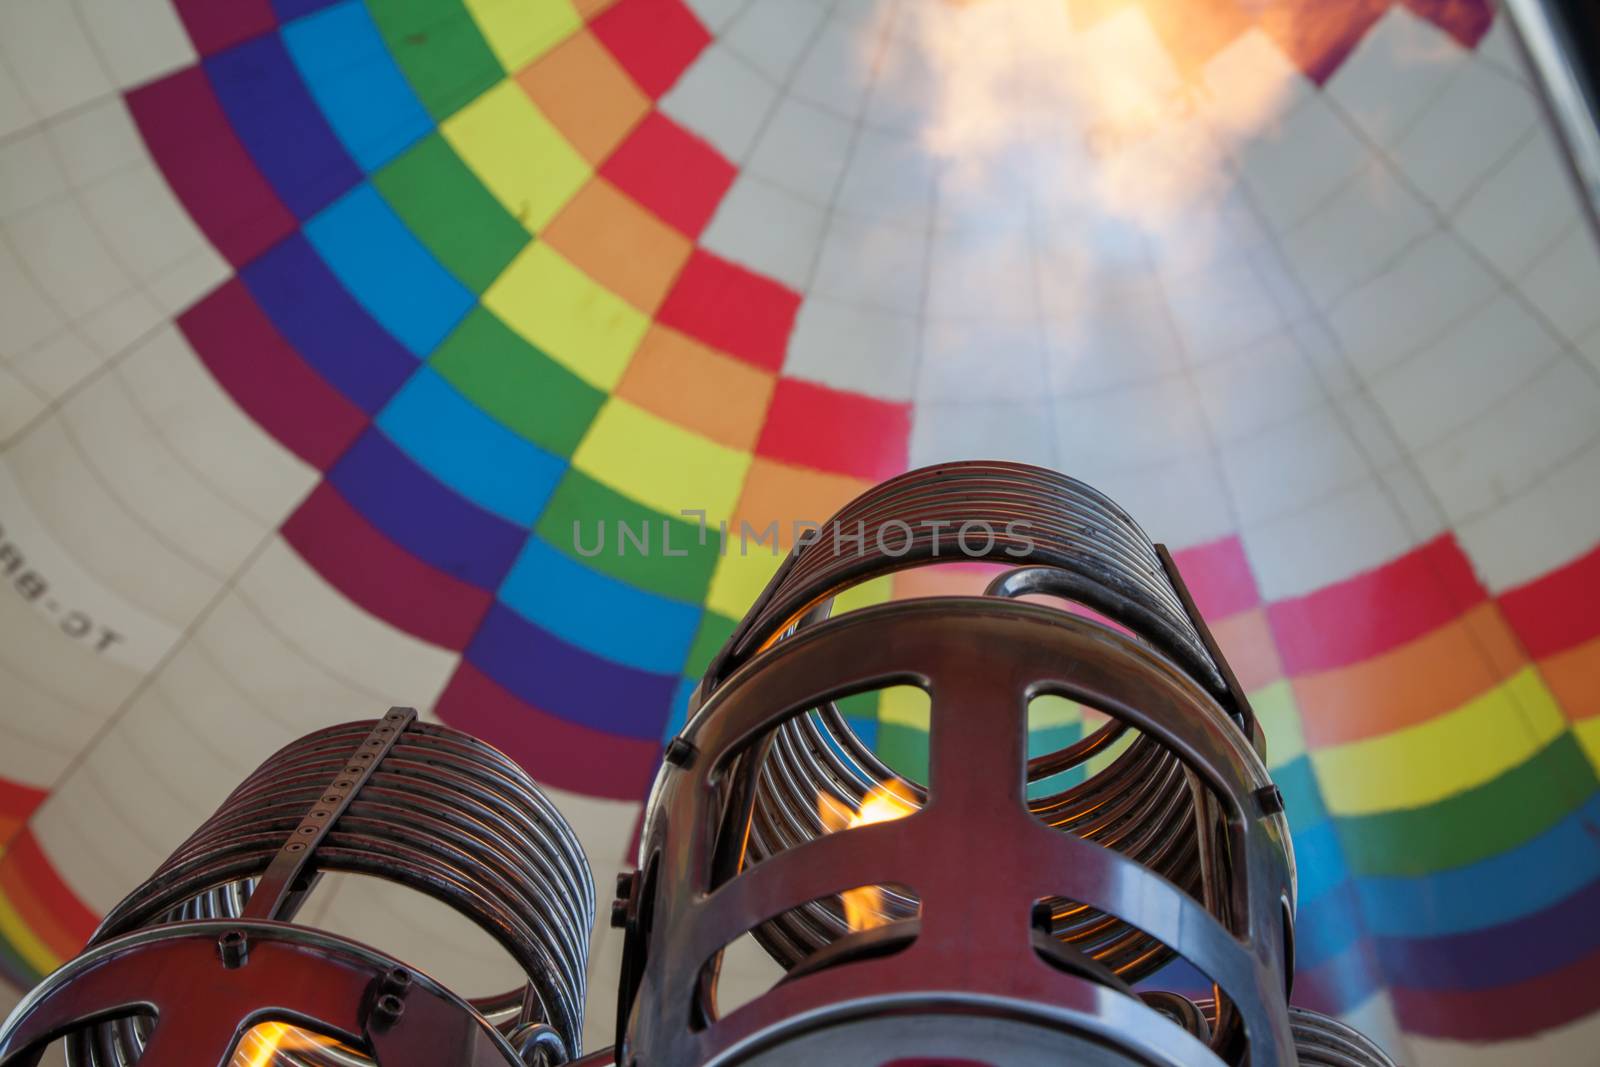 Hot air balloon engine firing up by haiderazim